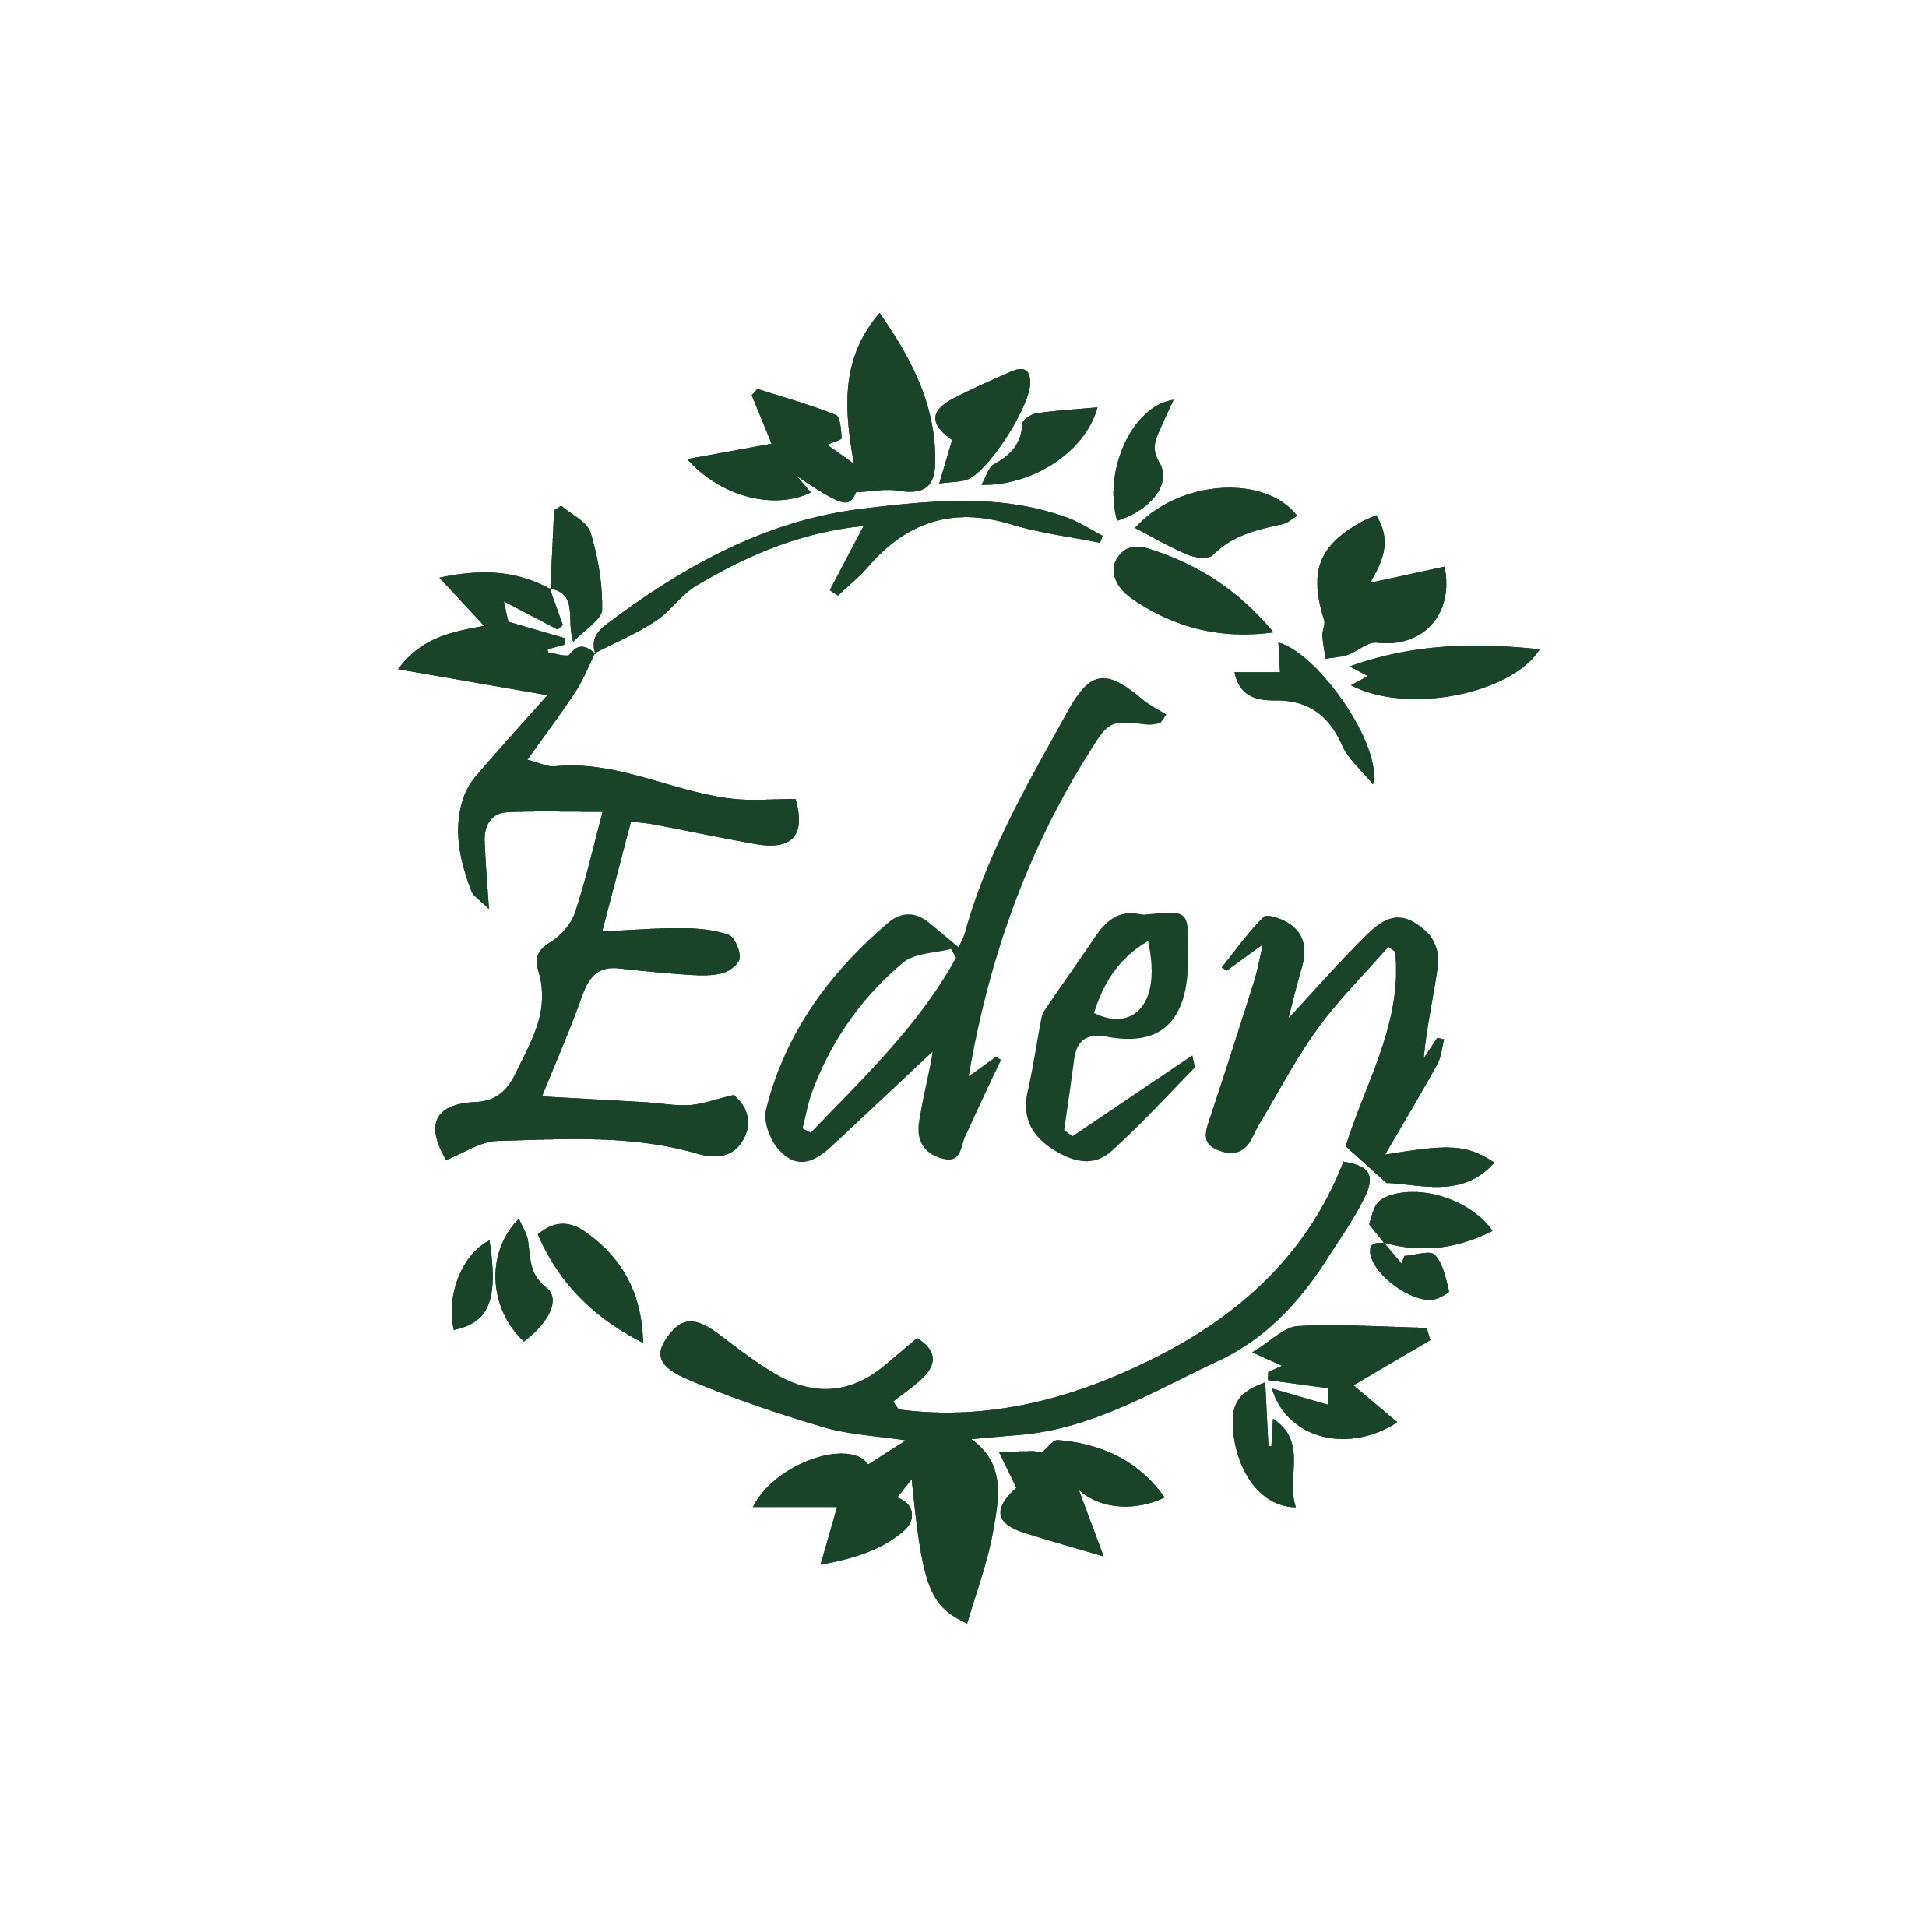 Eden Restaurant